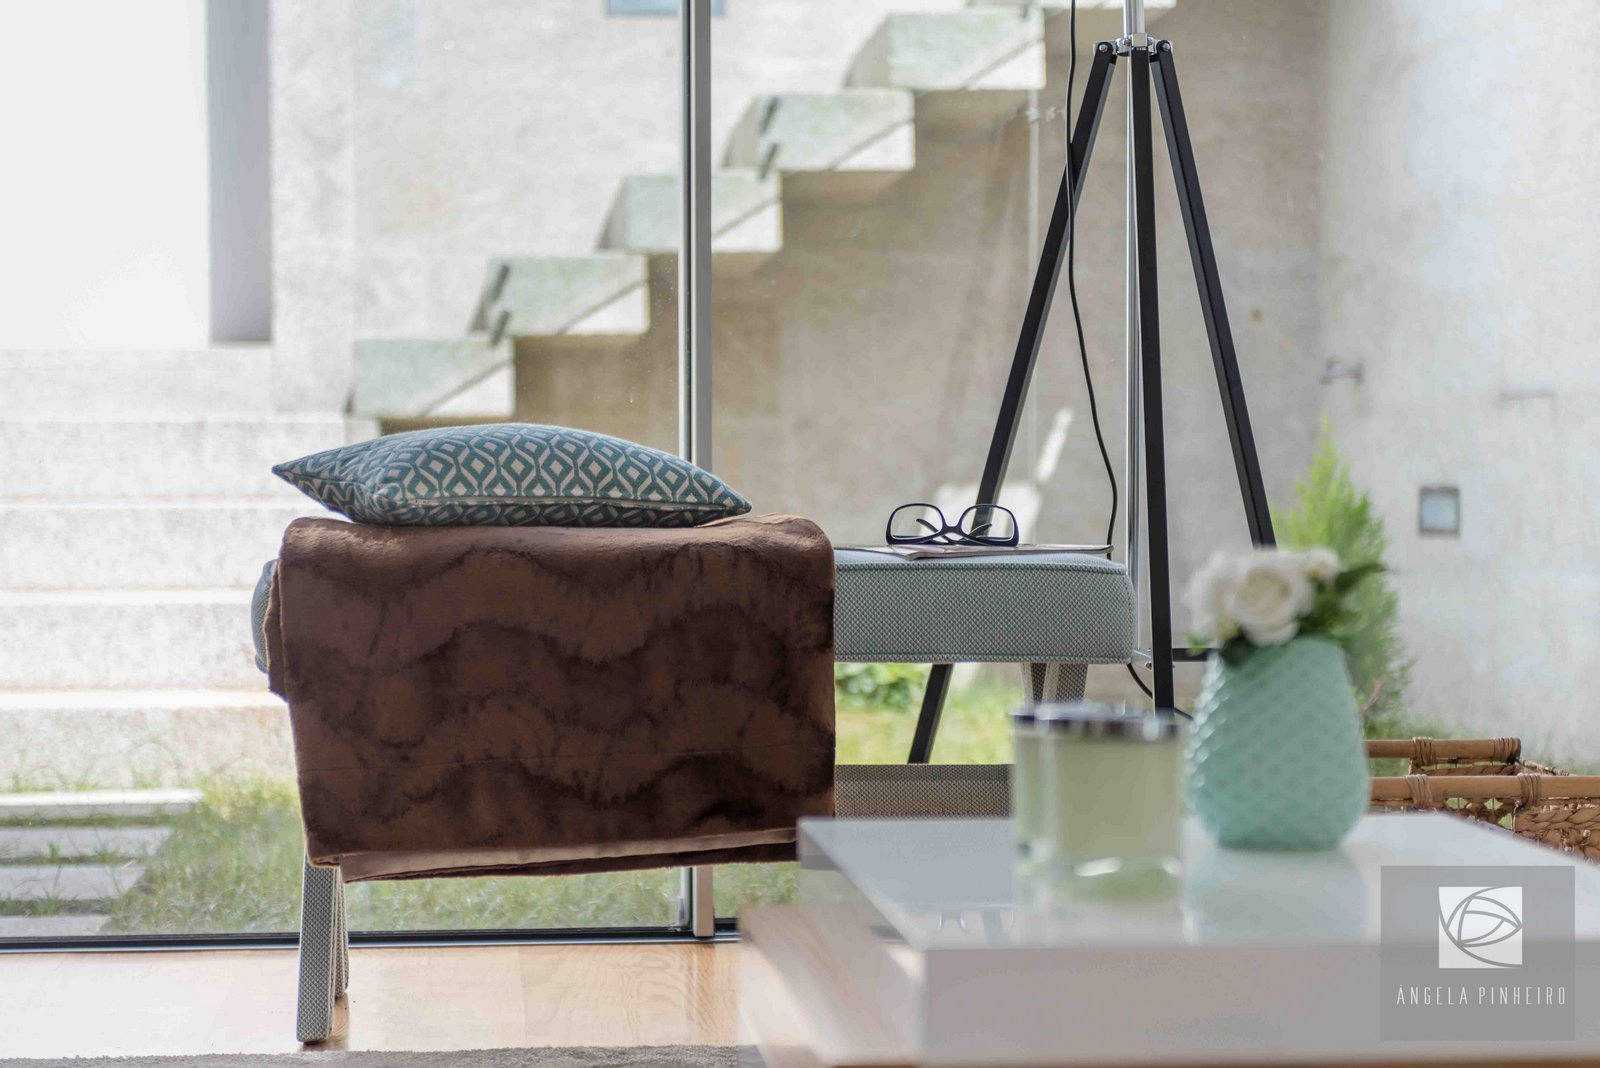 Ângela Pinheiro - Decoração de Interiores - Home Design - Decoração de Interiores - Sala Verde Menta